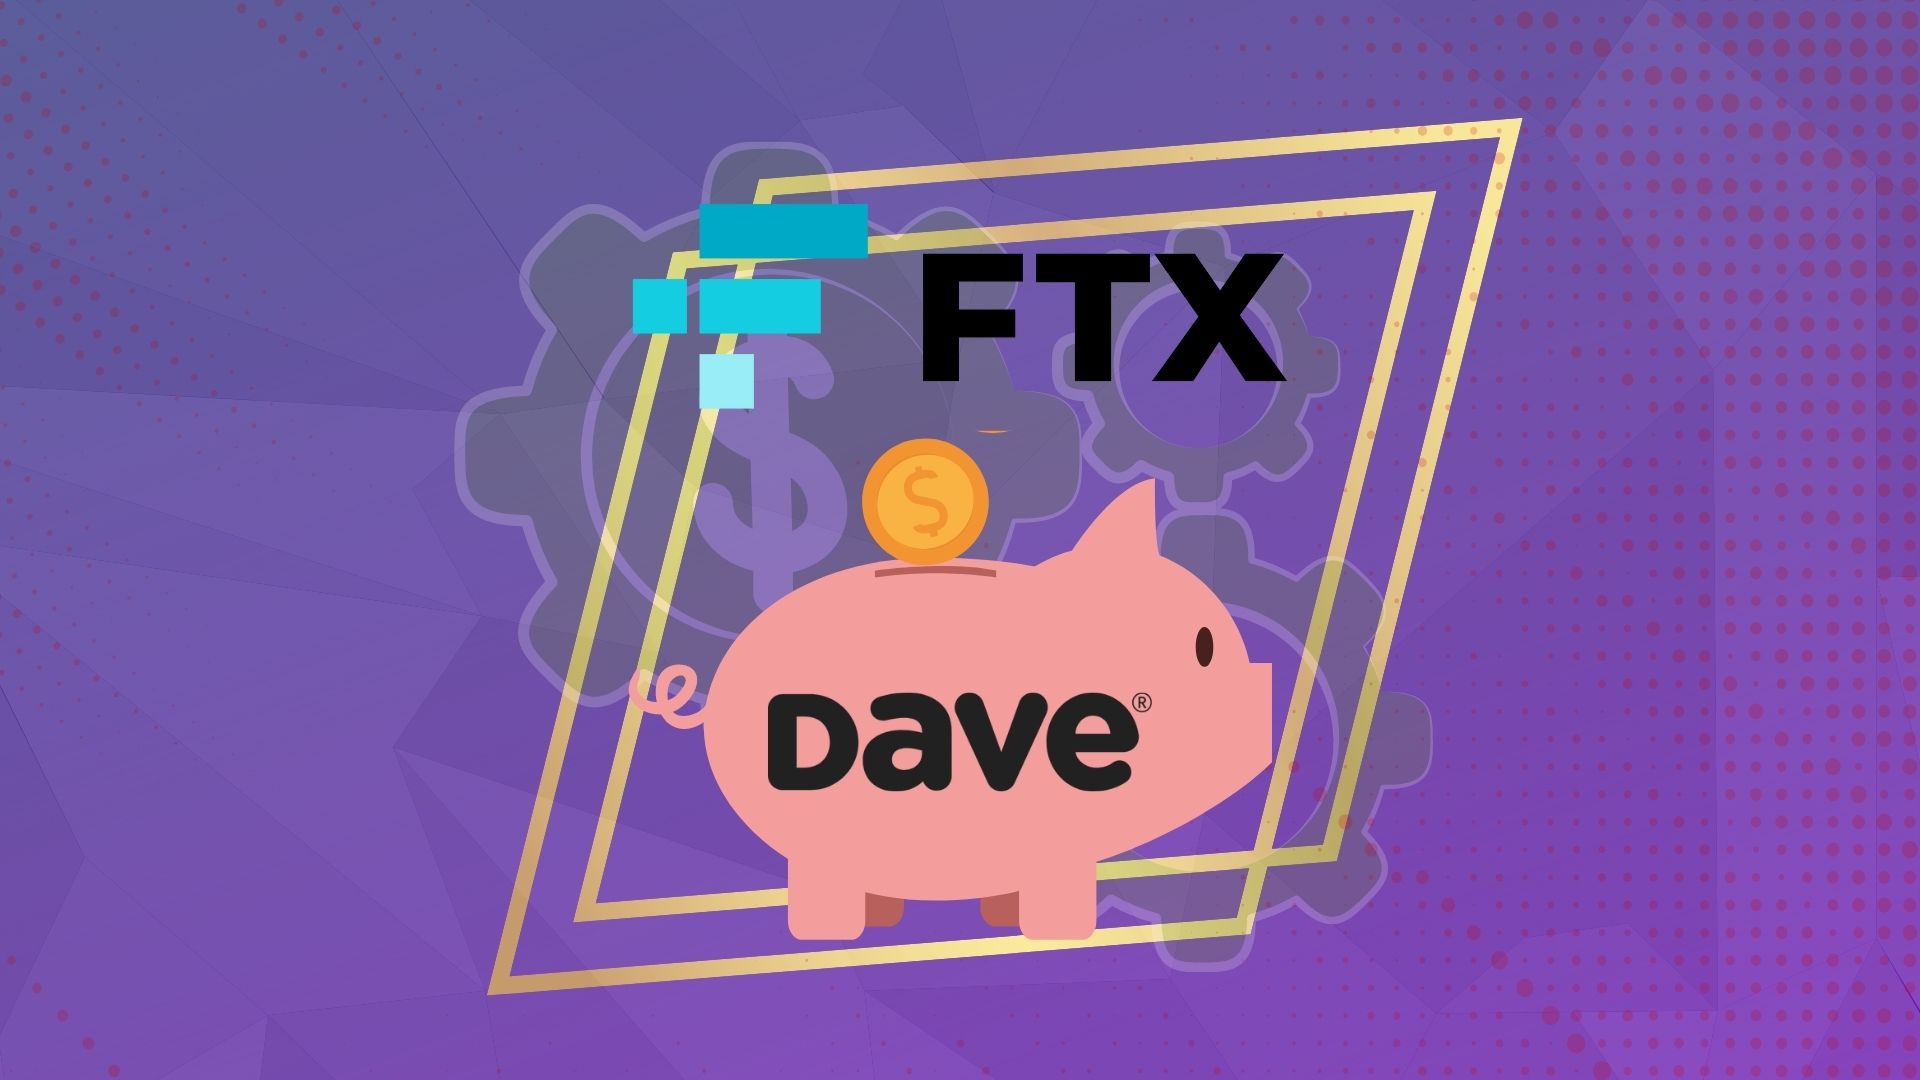 FTX вложила в Dave 100 млн долларов. Компании объявили о стратегическом партнерстве. Заглавный коллаж новости.